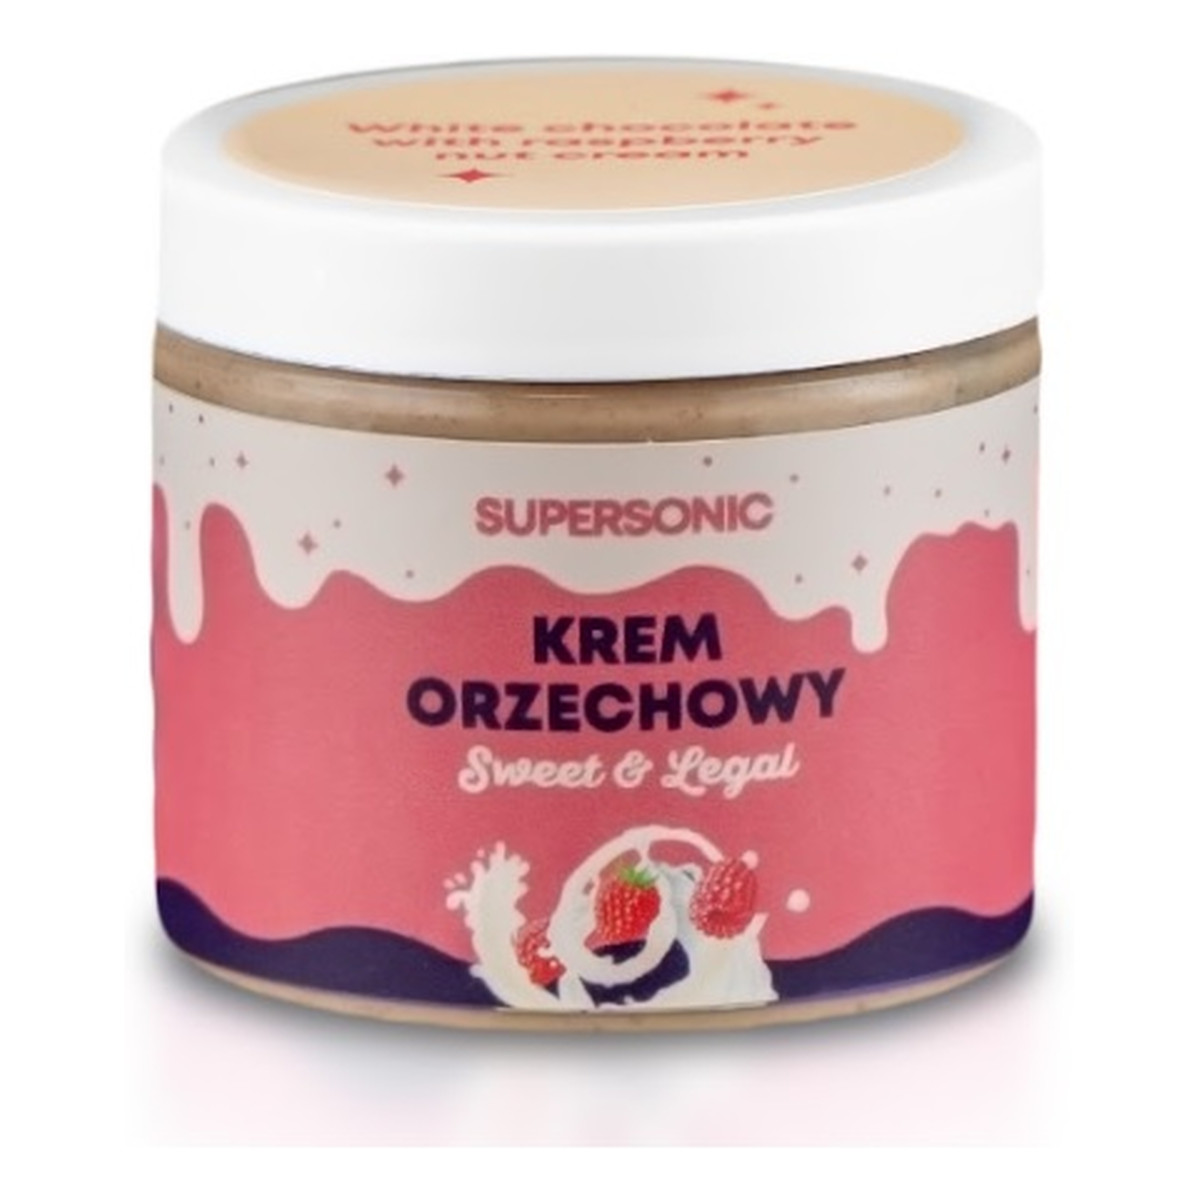 Supersonic Sweet&Legal orzechowy Krem proteinowy o smaku białej czekolady z malinami 160g